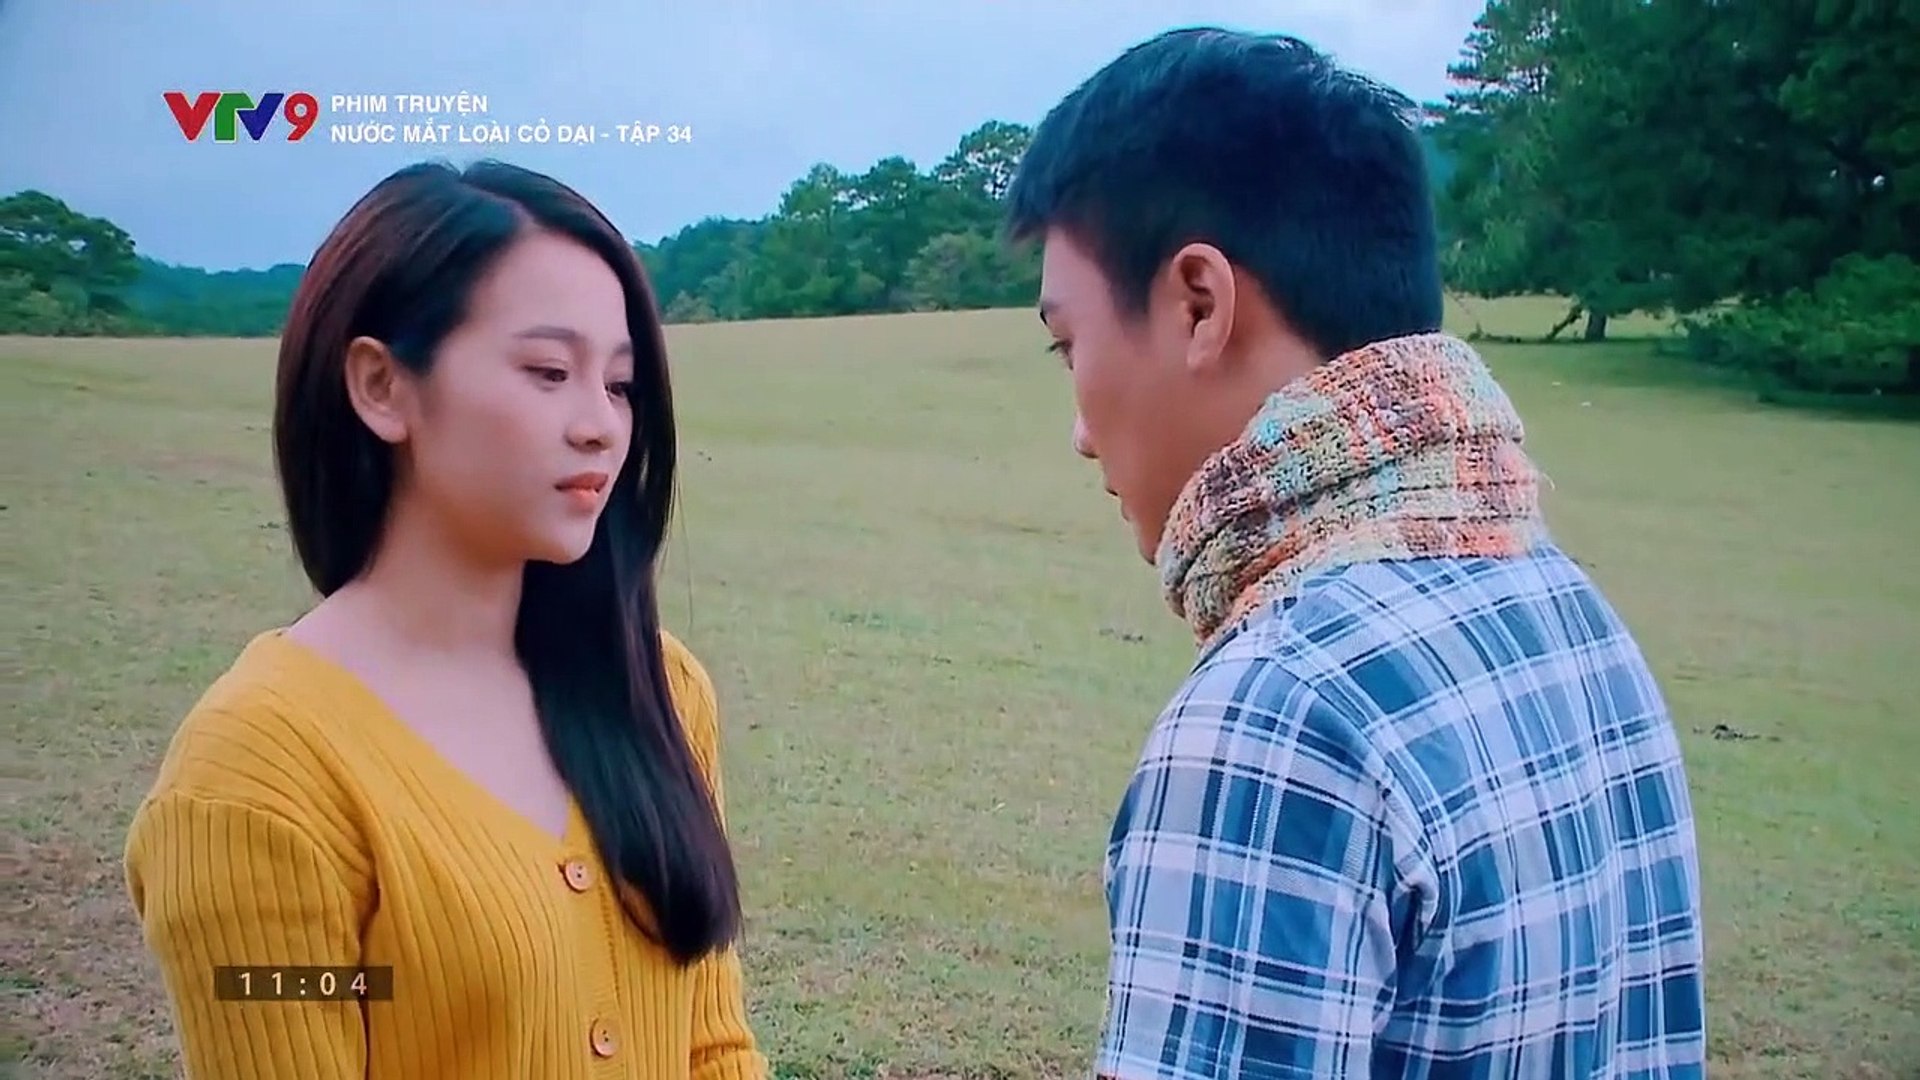 "Phim truyện Việt Nam Nước mắt Loài Cỏ Dại: Hành trình tình người và bí ẩn gia đình" - Một bộ phim không thể bỏ lỡ